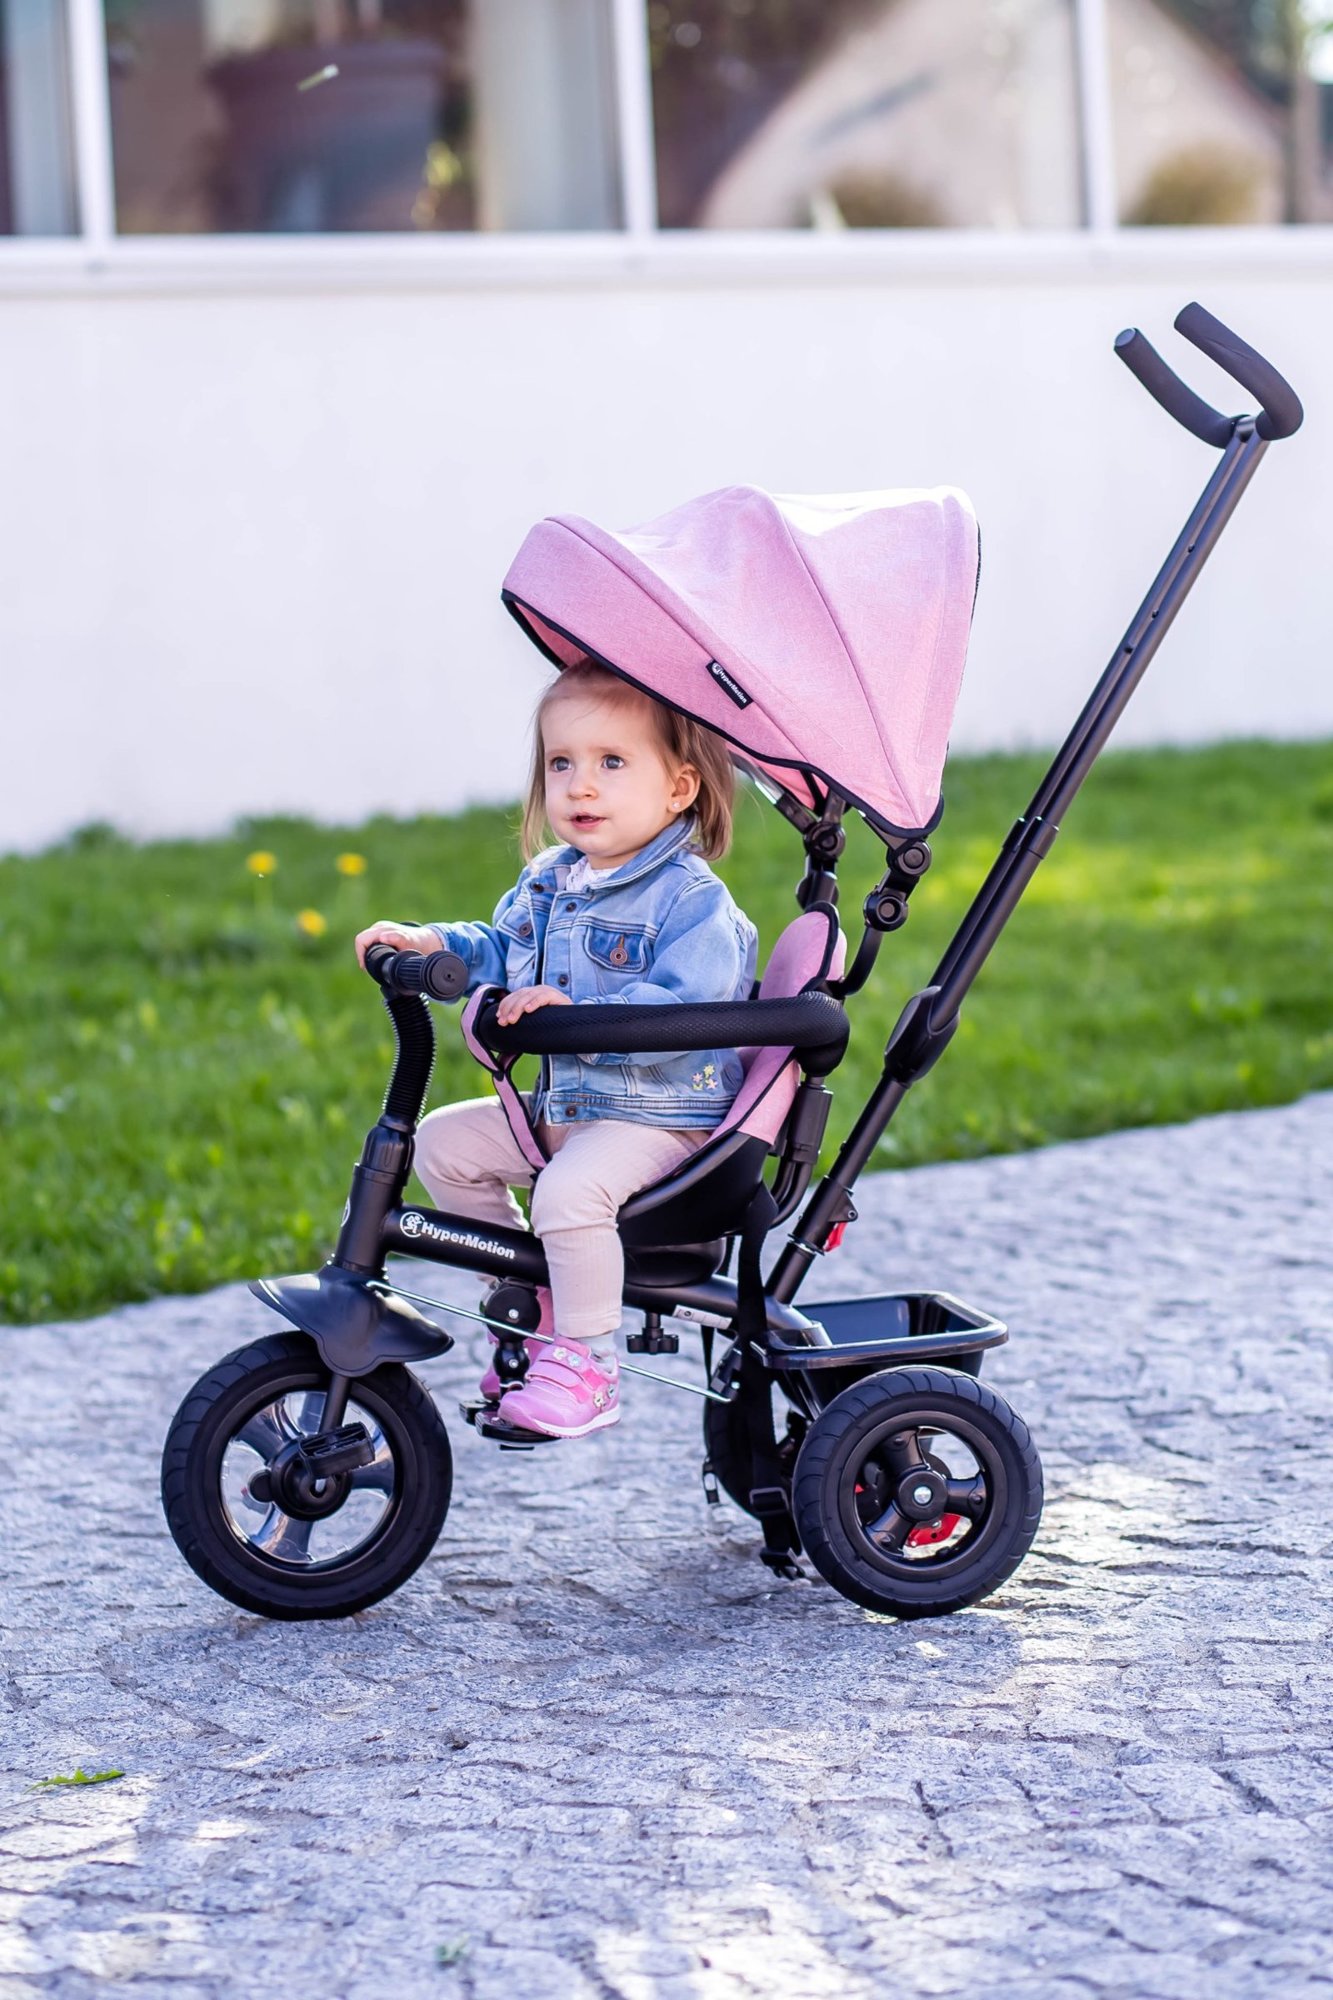 Rowerek trójkołowy dla dzieci 1-4 lata - TOBI FREY - kolor różowy - obracany - pompowane koła + pchacz